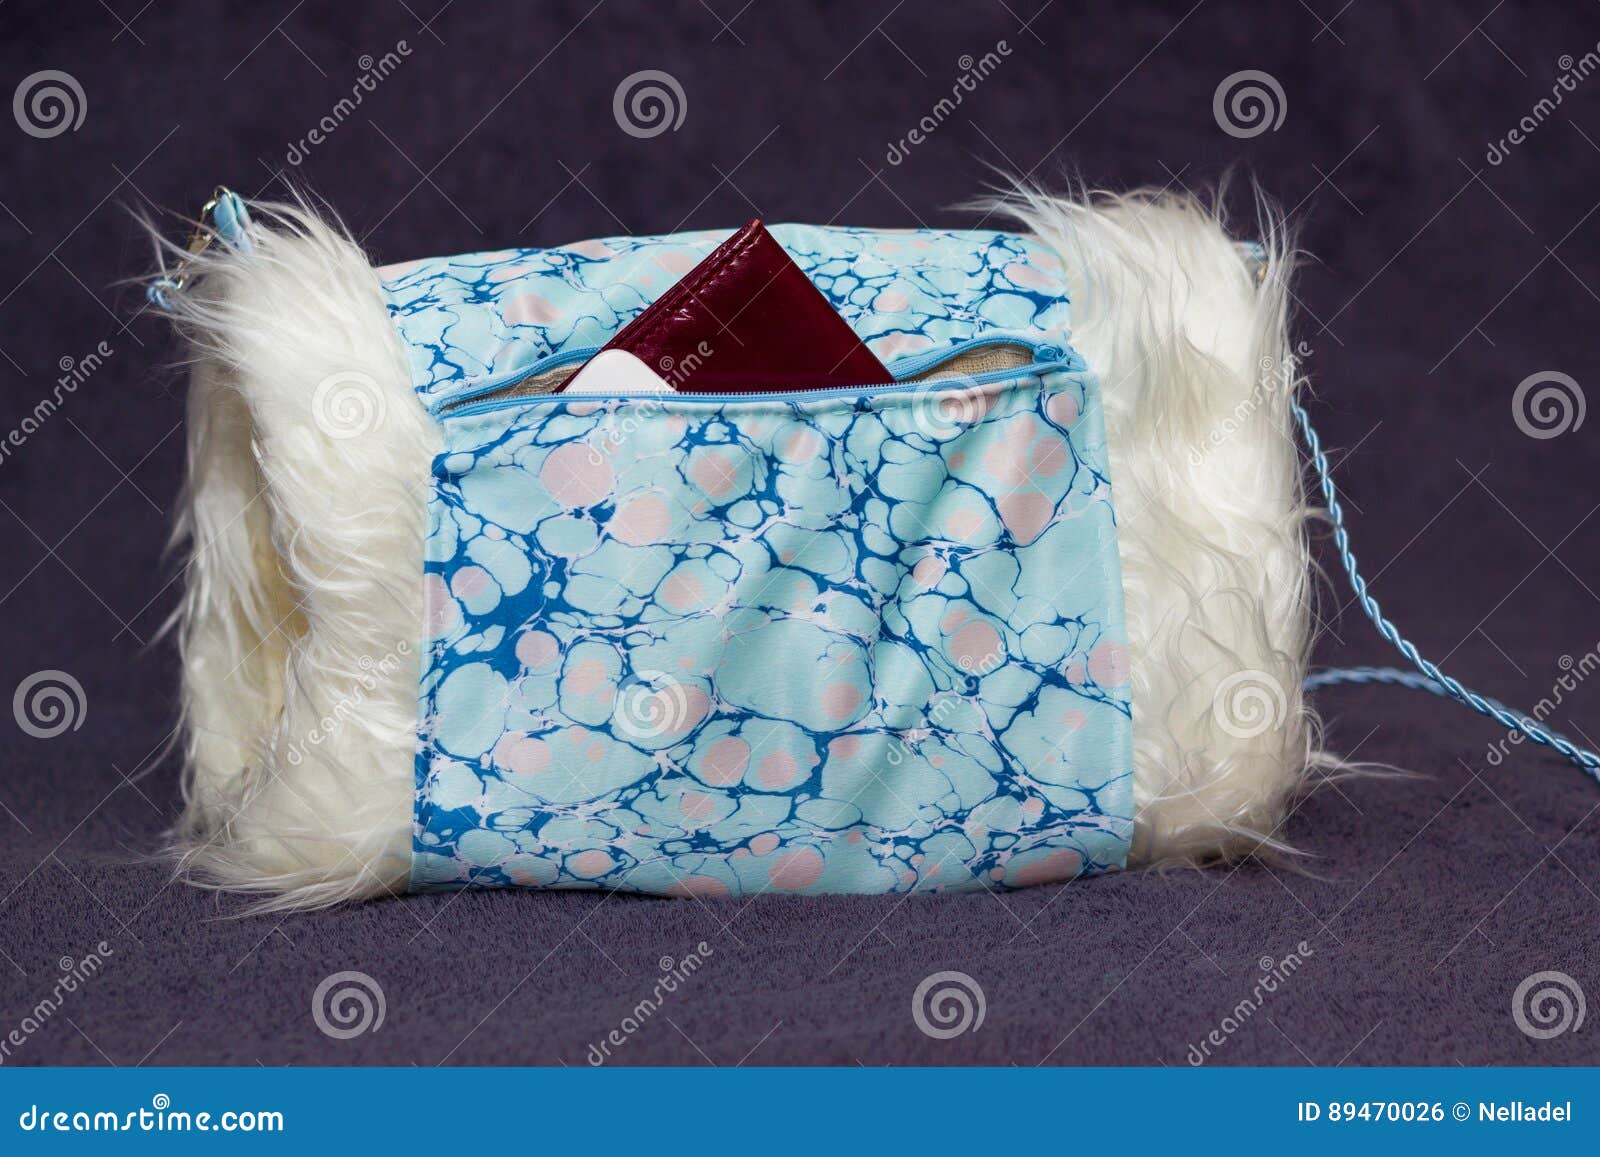 Κάλυμμα με μια τσέπη. Χειροποίητο συνθετικό άσπρο κάλυμμα γουνών με την μπλε περιποίηση υφάσματος ebru με ένα διαβατήριο που κολλά από την τσέπη του στο γκρίζο ρηχό βάθος υποβάθρου του τομέα